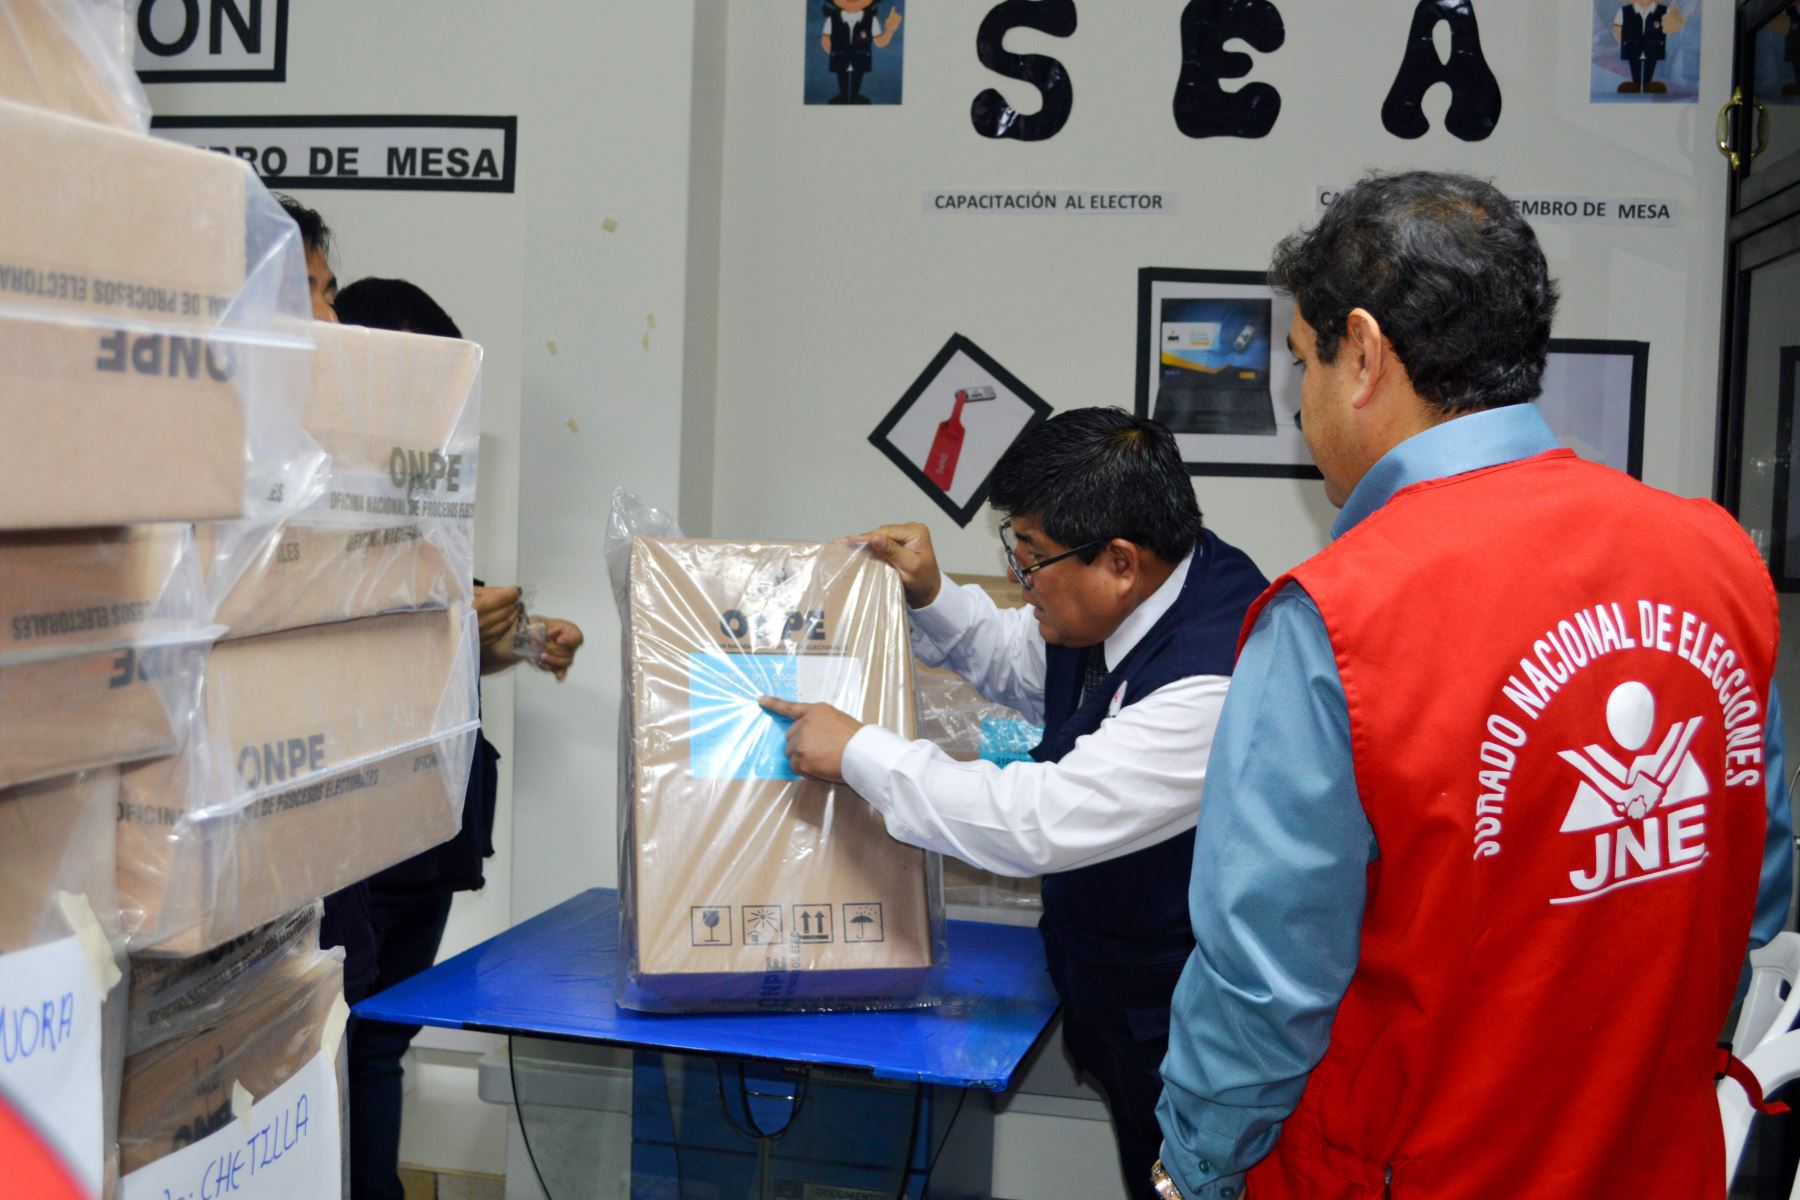 El jueves 23 Cajamarca inicia la distribución del material electoral para las Elecciones Congresales Extraordinarias. ANDINA/Difusión